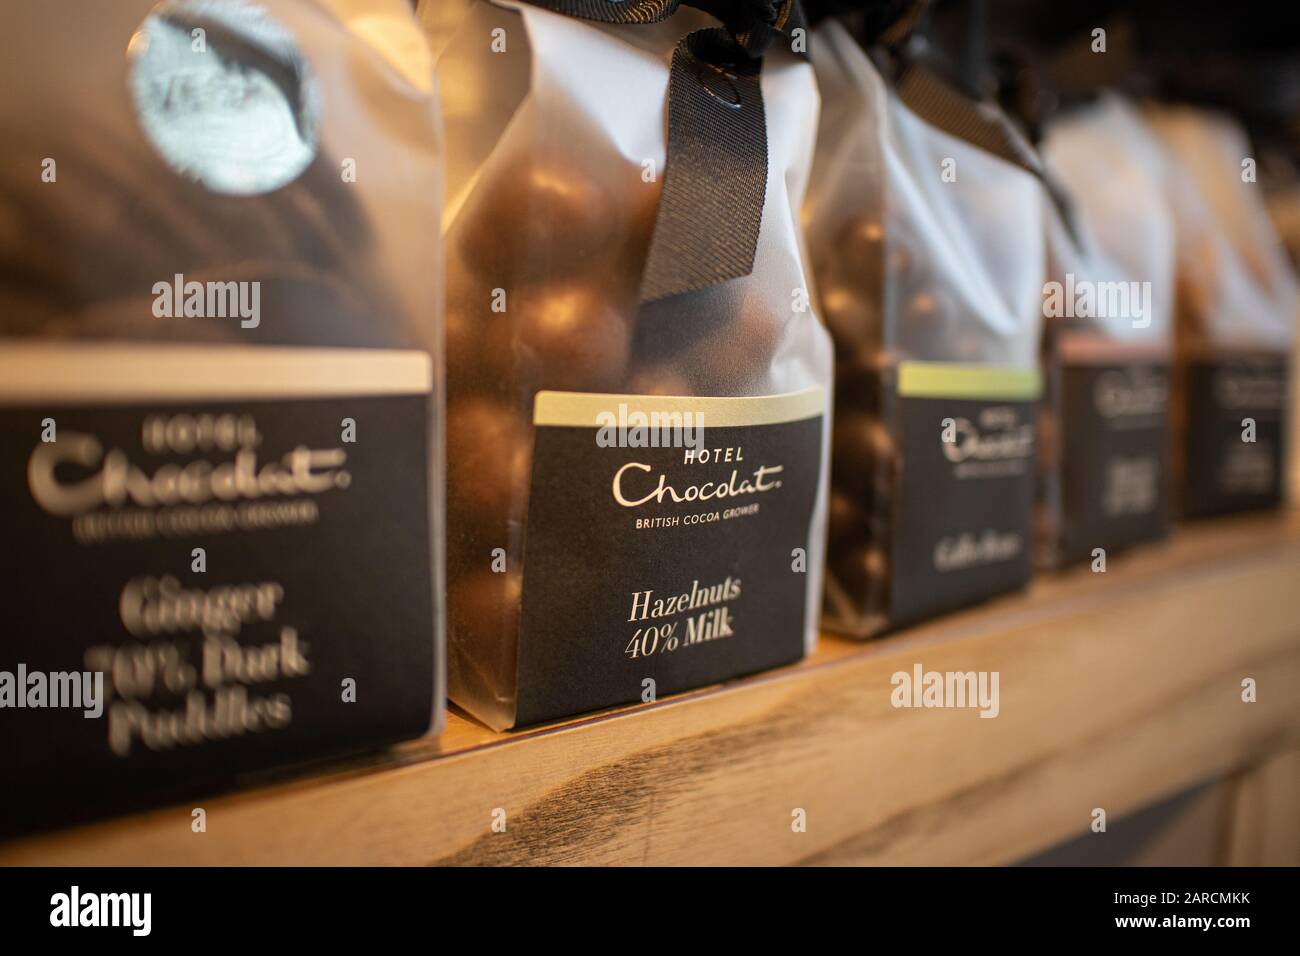 Sacchetti di 'bottoni o 'puddles' di cioccolato Hotel in vendita al banco. L'Hotel Chocolat è il marchio di cioccolato premium preferito dal Regno Unito. Foto Stock